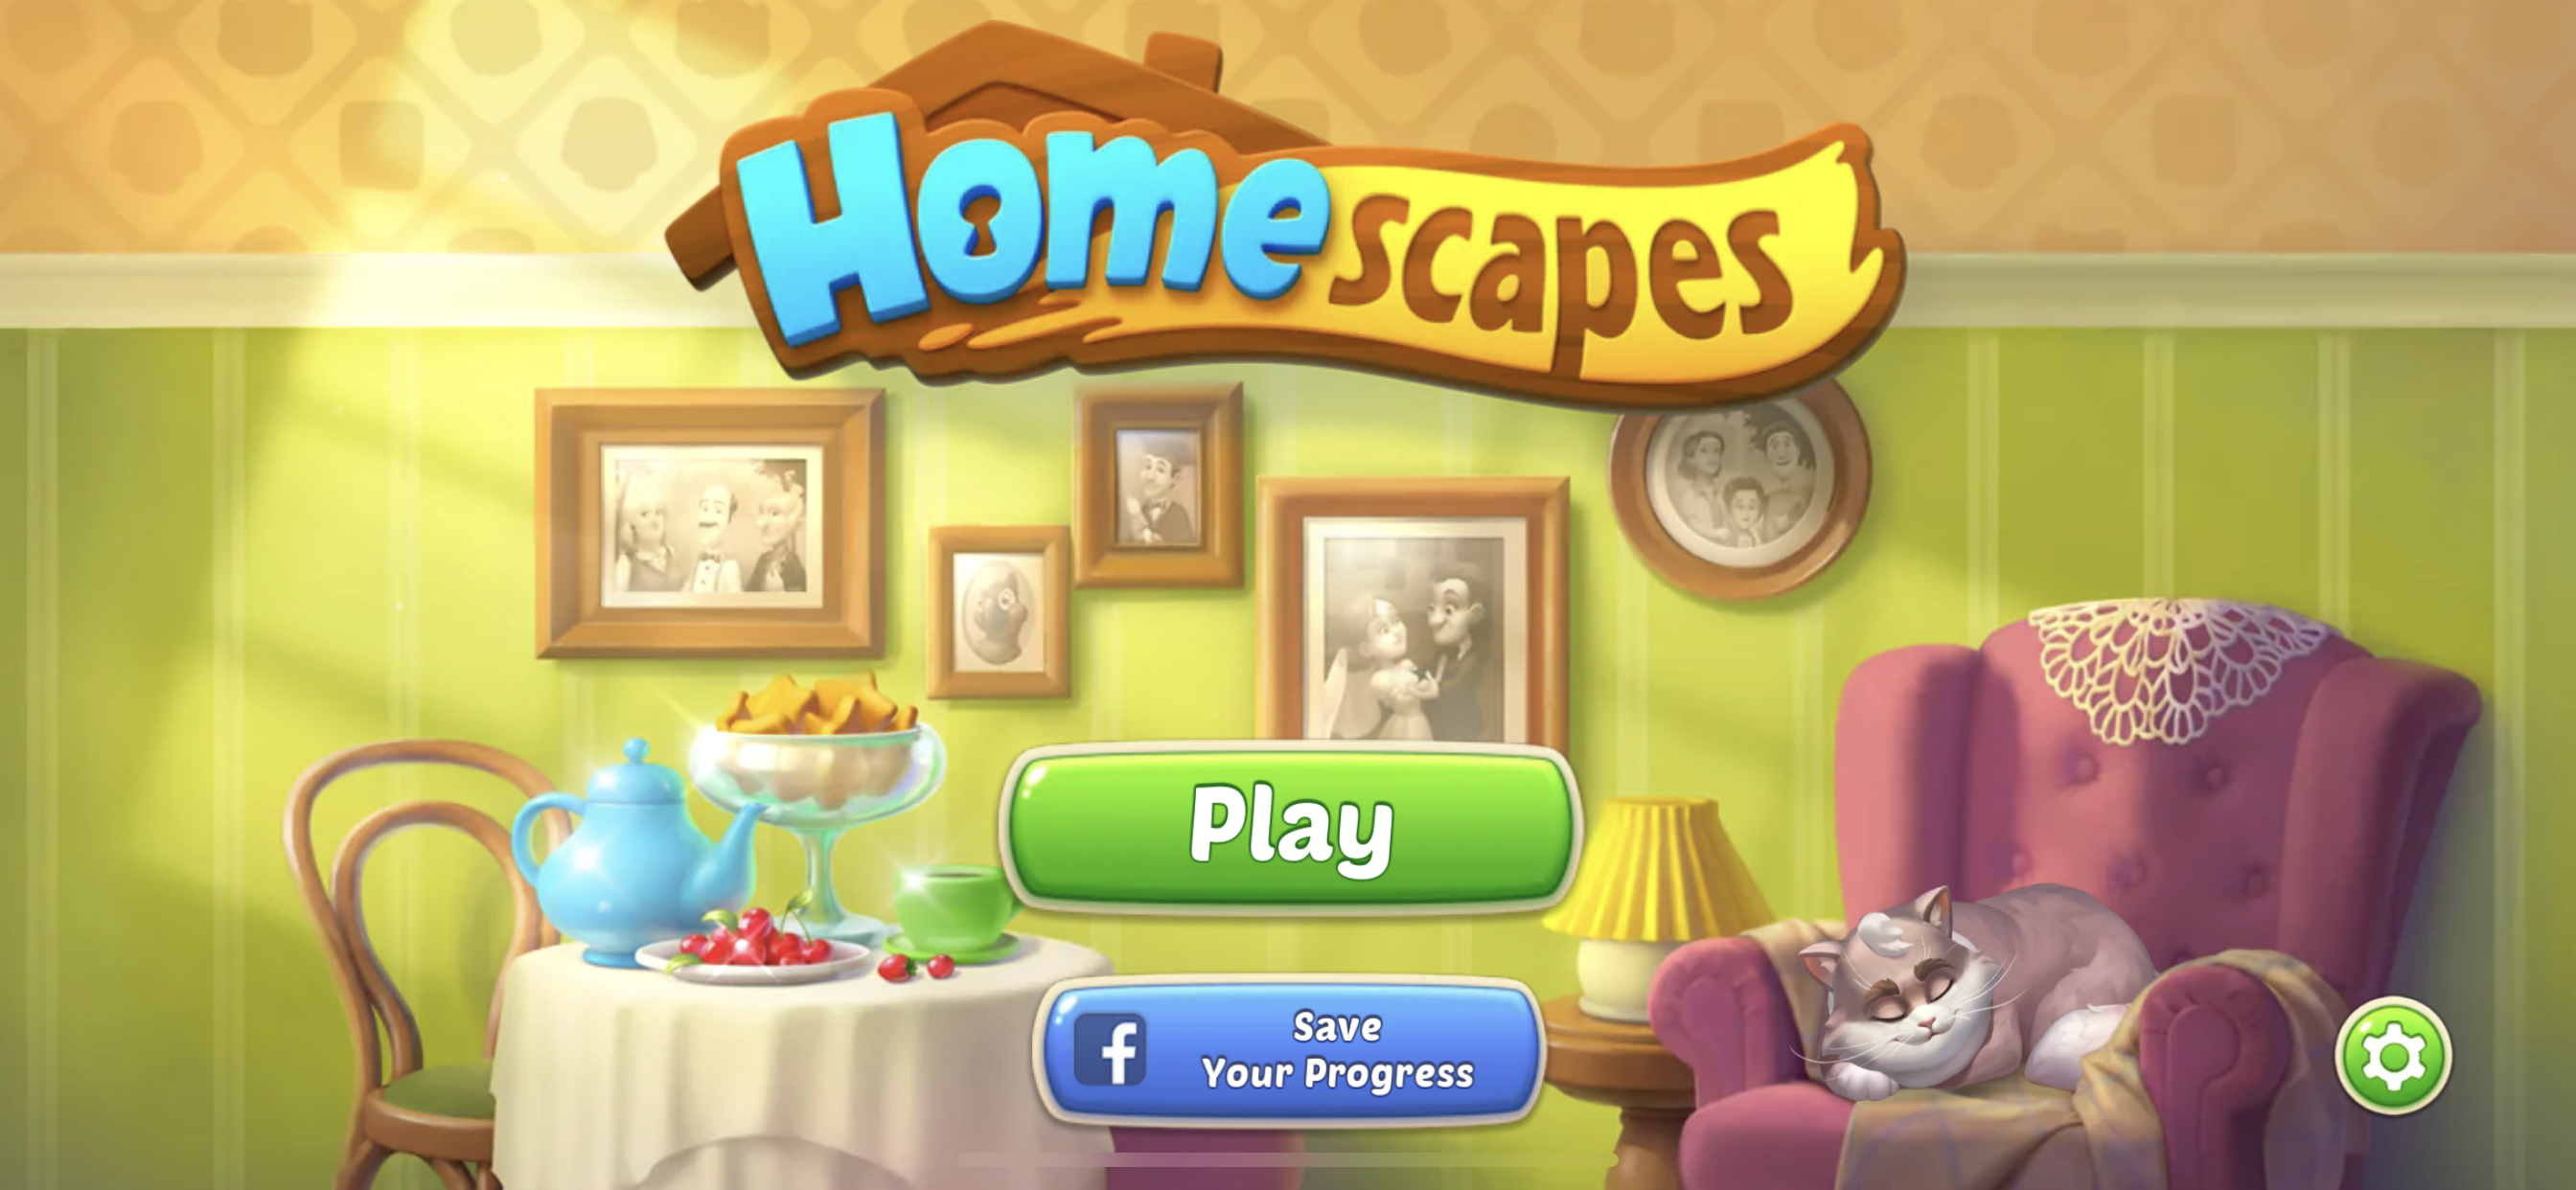 Giới thiệu đôi chút về game Homescapes